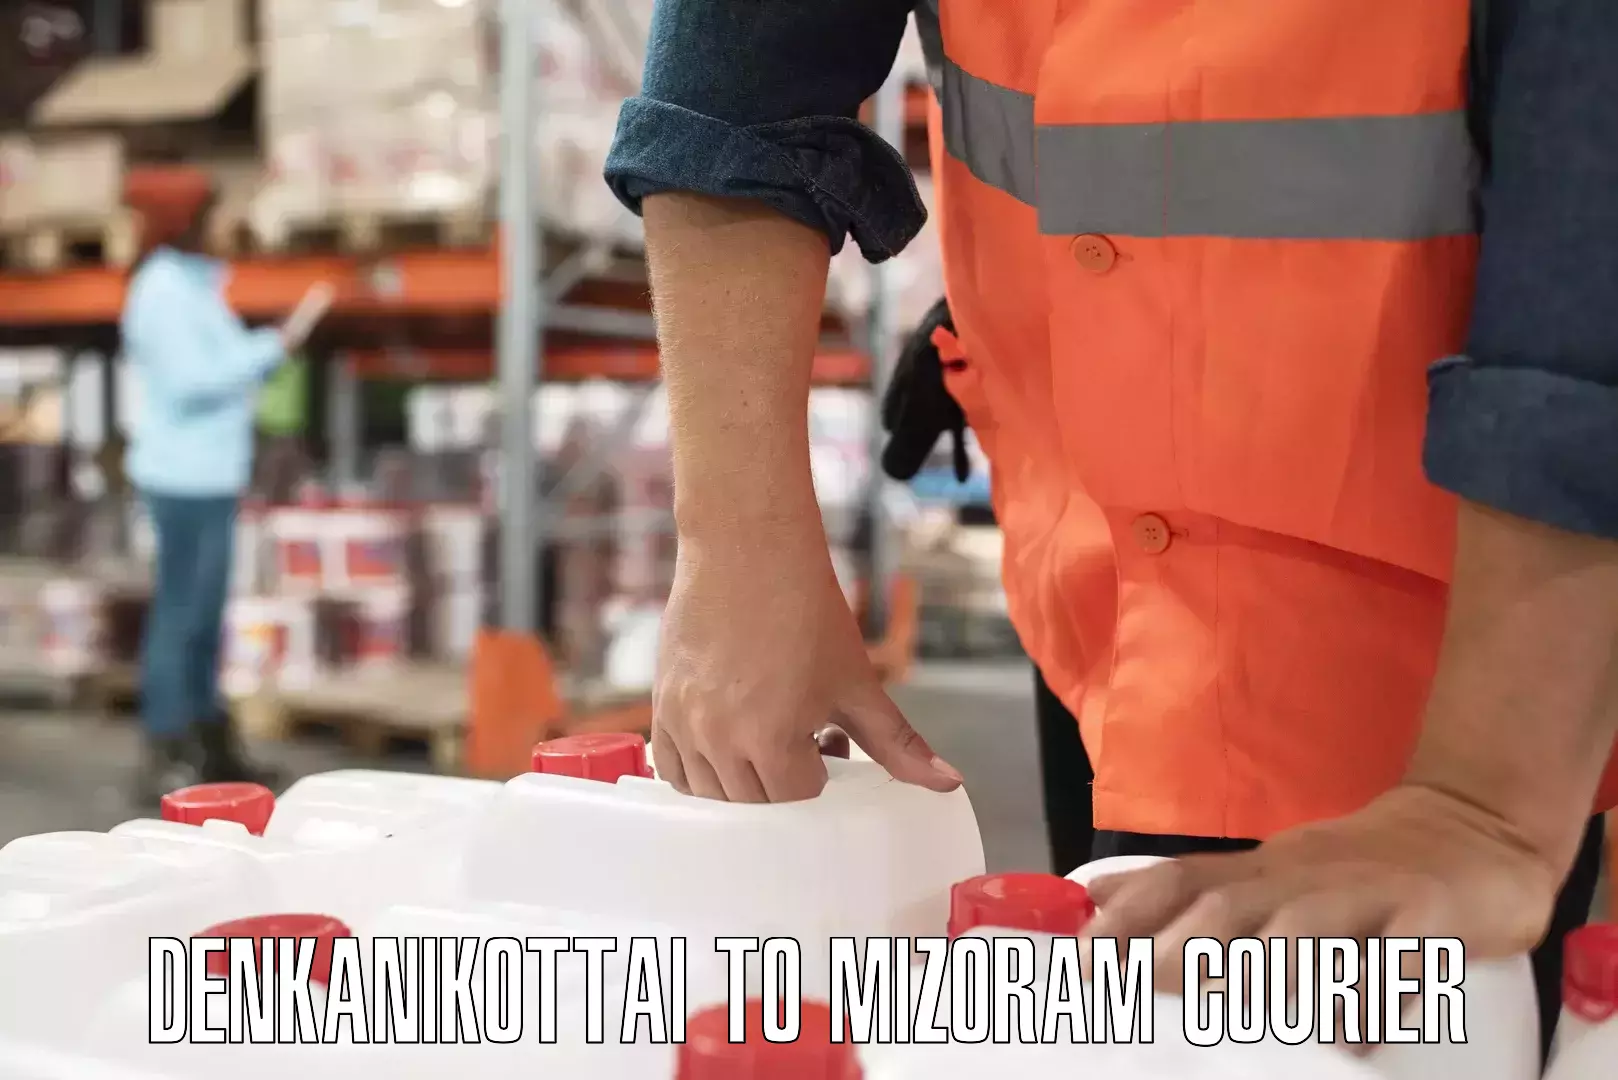 Personalized courier experiences Denkanikottai to Mizoram